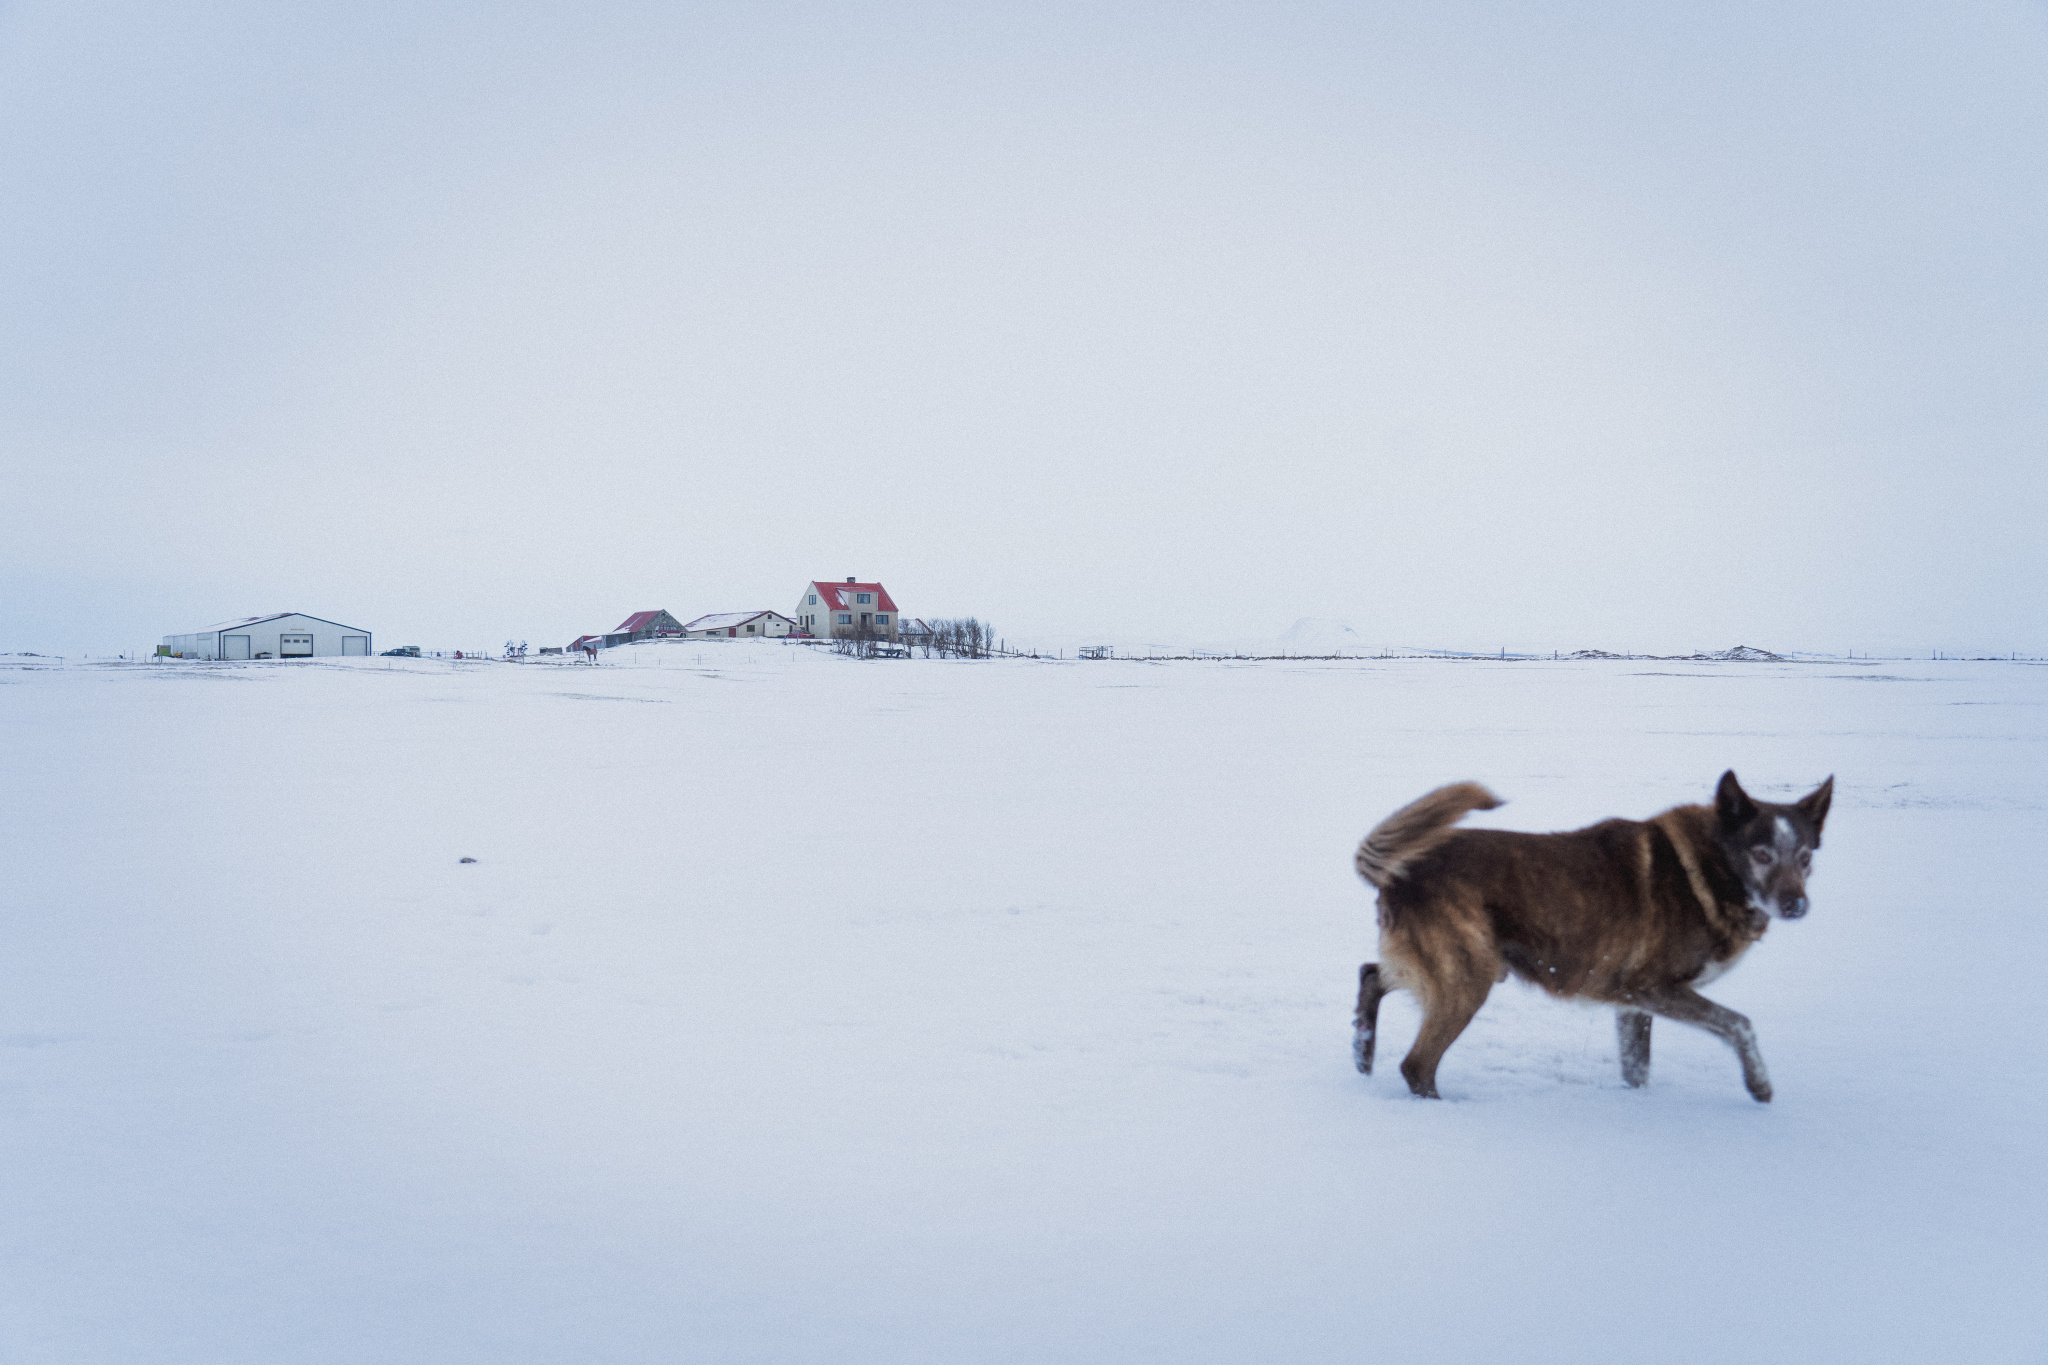 Zimní fotografické cvičení: Vytvořte zimní fotografickou sérii